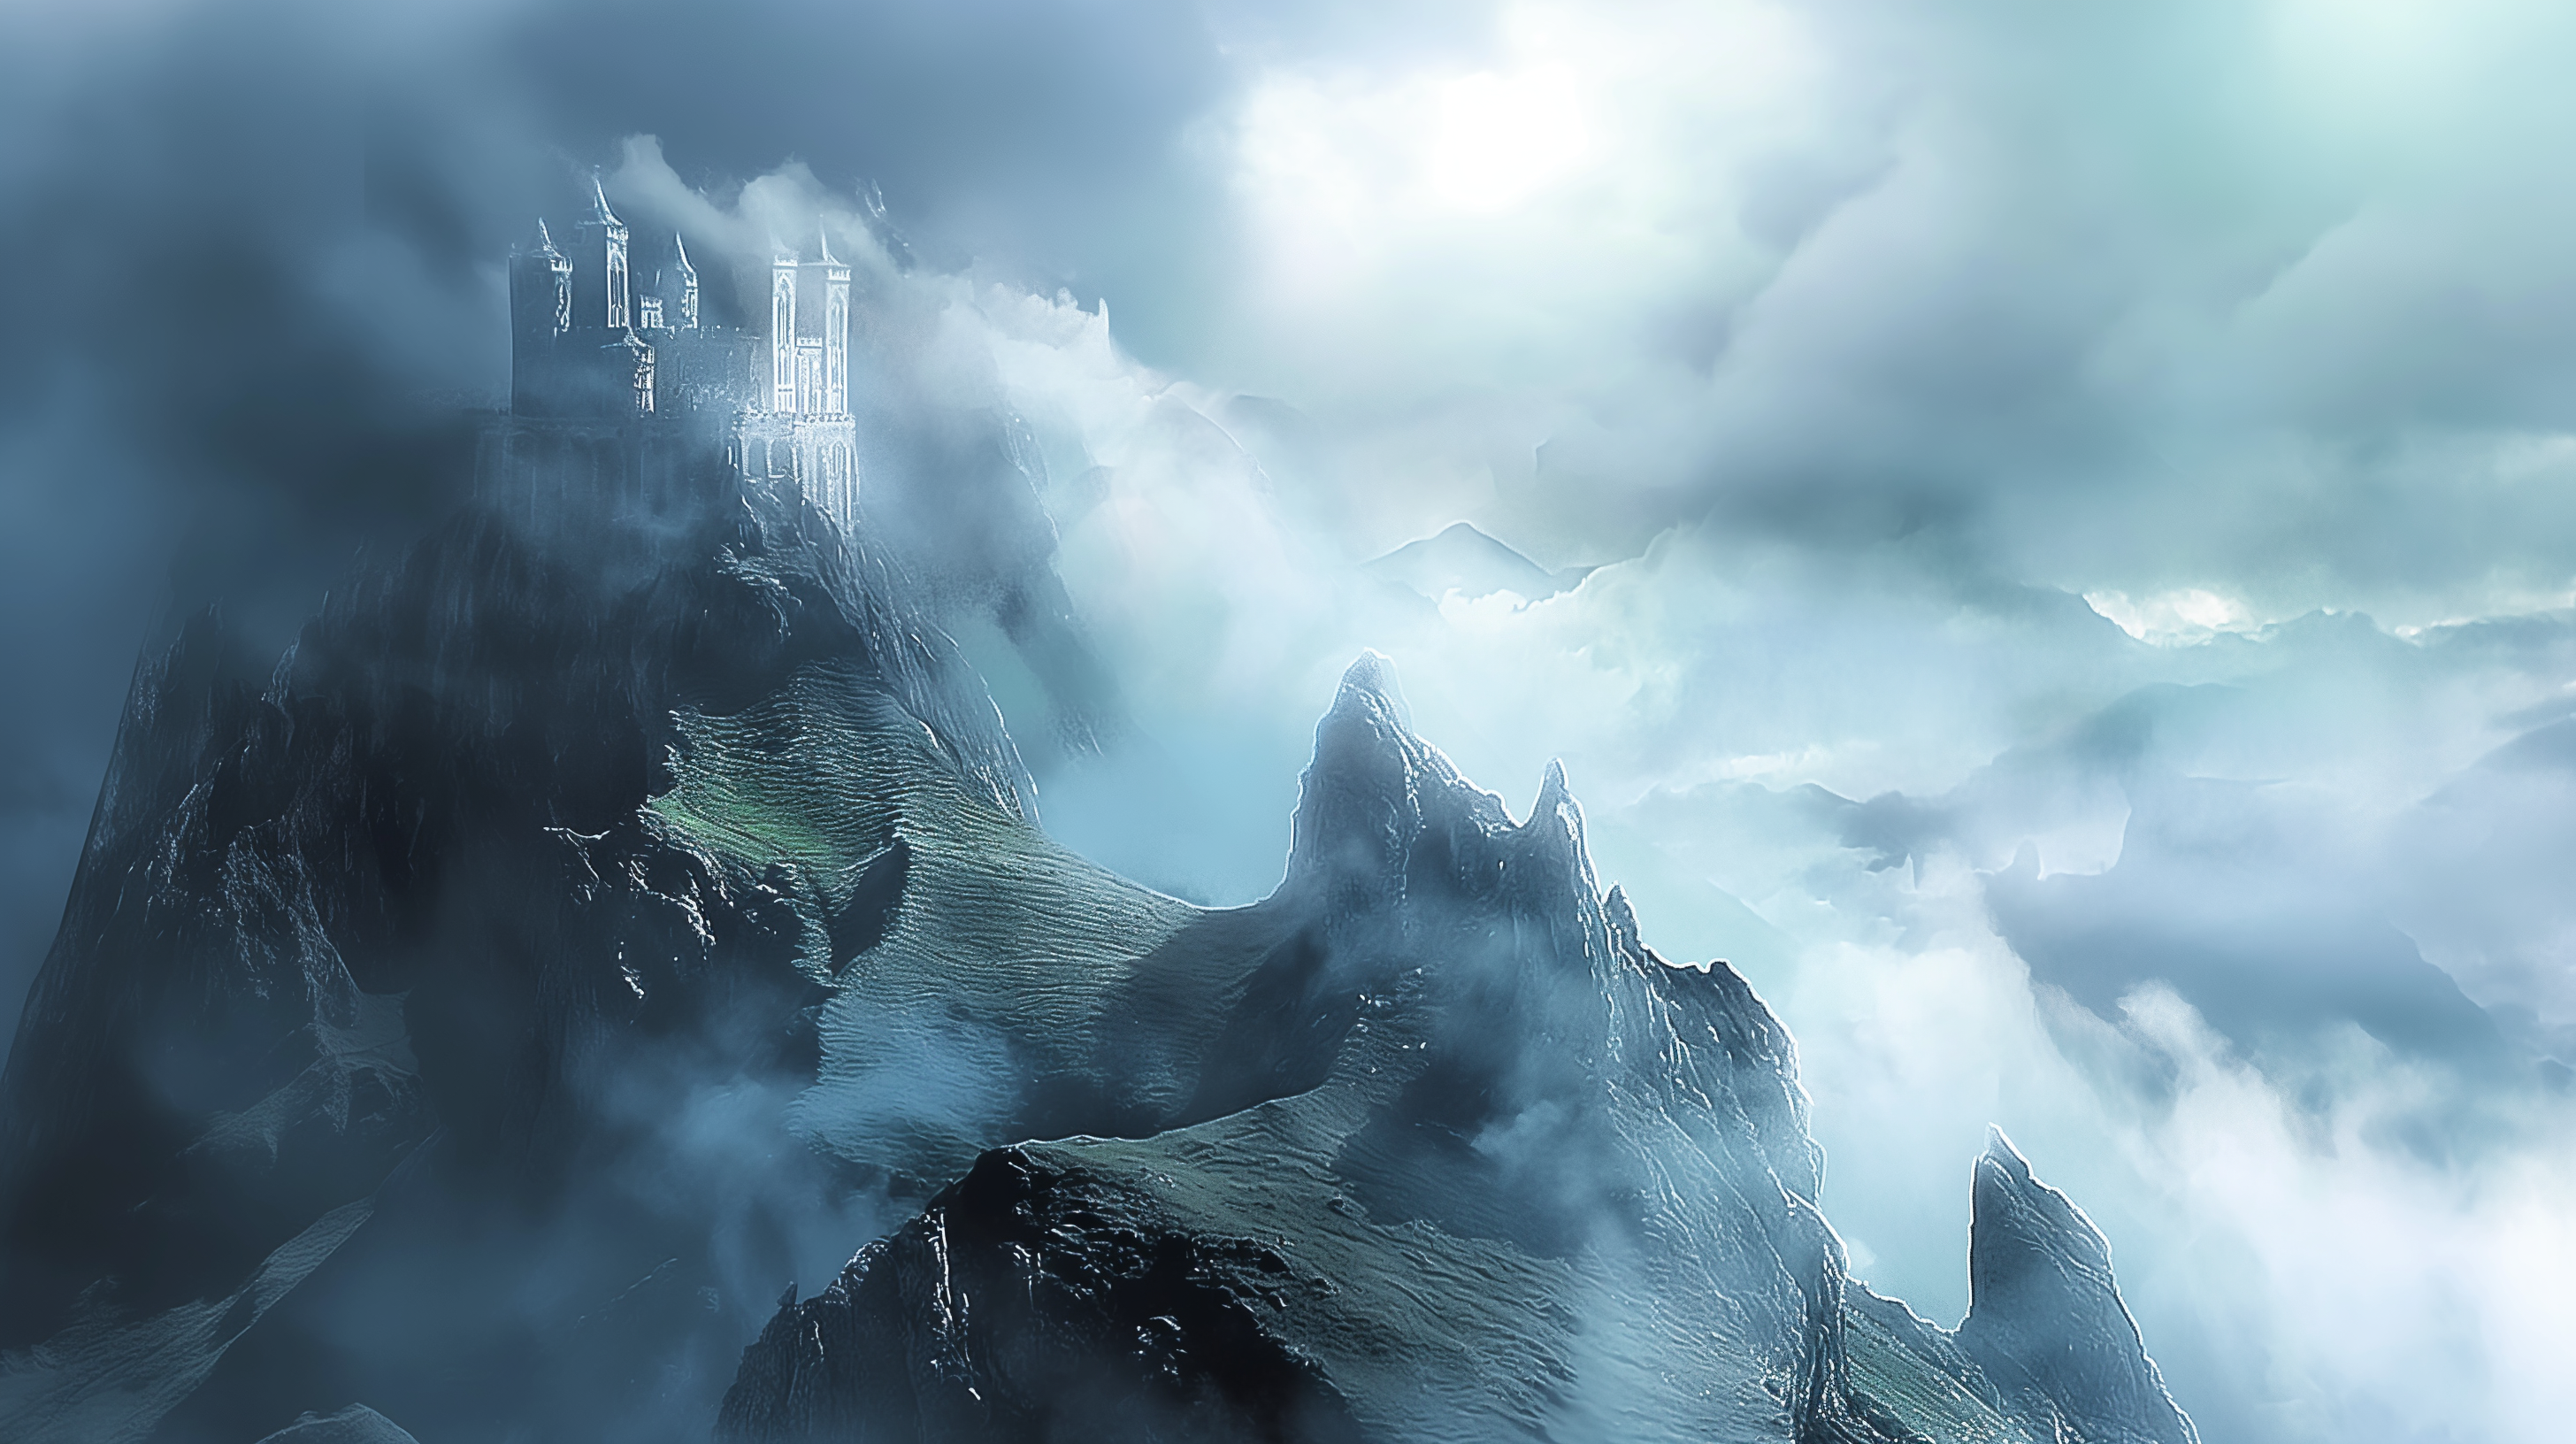 Ätherisches Kloster auf einem rauen Berg, umgeben von dicken Wolken und Nebel, erzeugt eine geheimnisvolle und dramatische Atmosphäre.